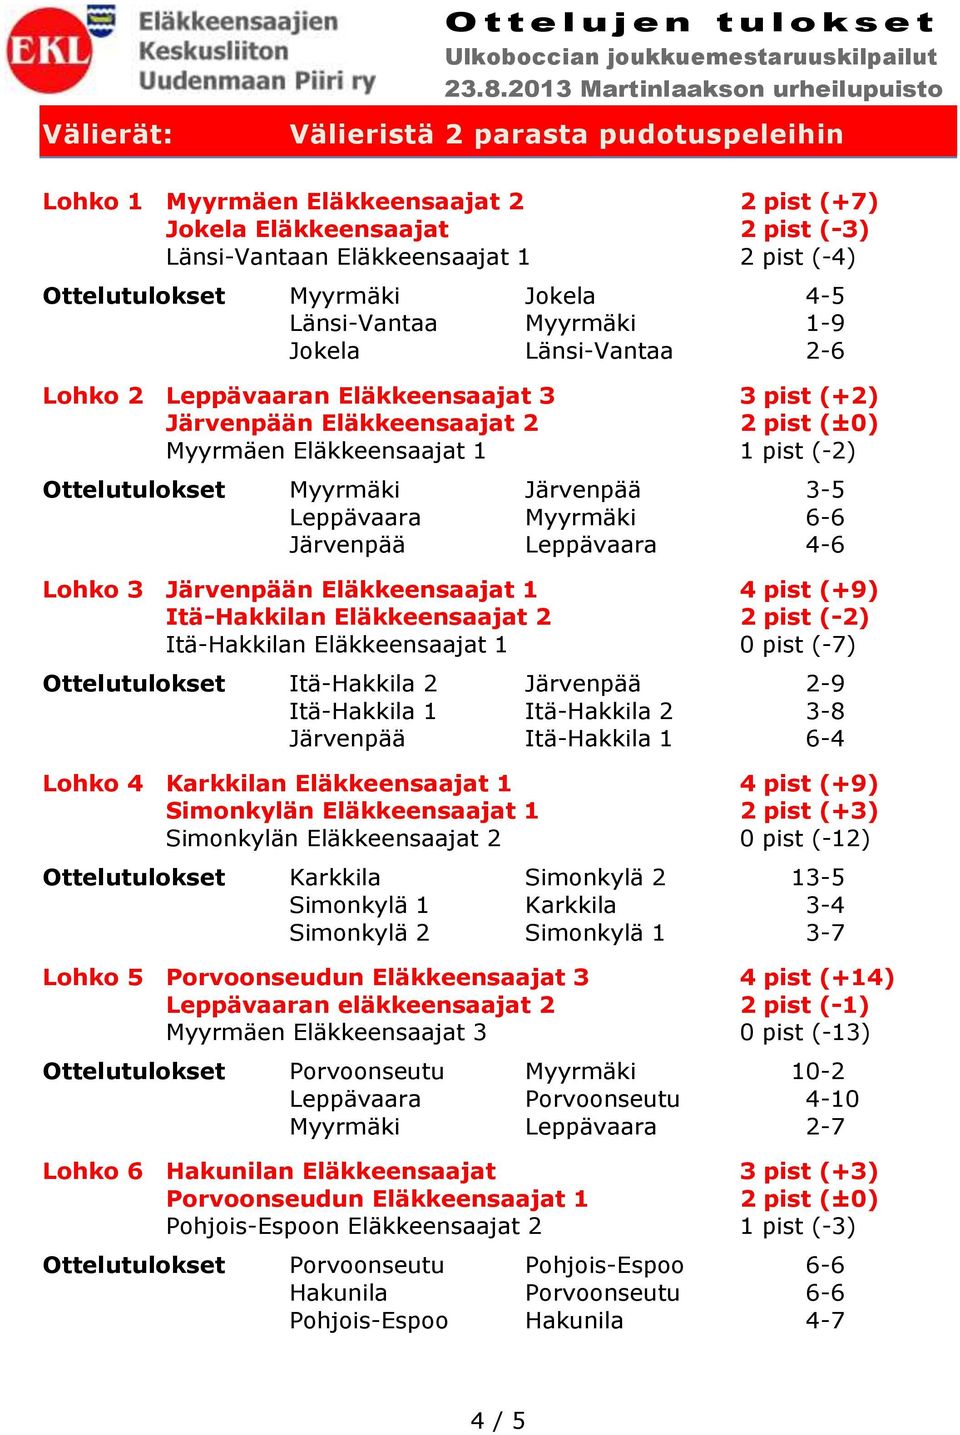 Eläkkeensaajat 1 1 pist (-2) Ottelutulokset Myyrmäki Järvenpää 3-5 Leppävaara Myyrmäki 6-6 Järvenpää Leppävaara 4-6 Lohko 3 Järvenpään Eläkkeensaajat 1 4 pist (+9) Itä-Hakkilan Eläkkeensaajat 2 2